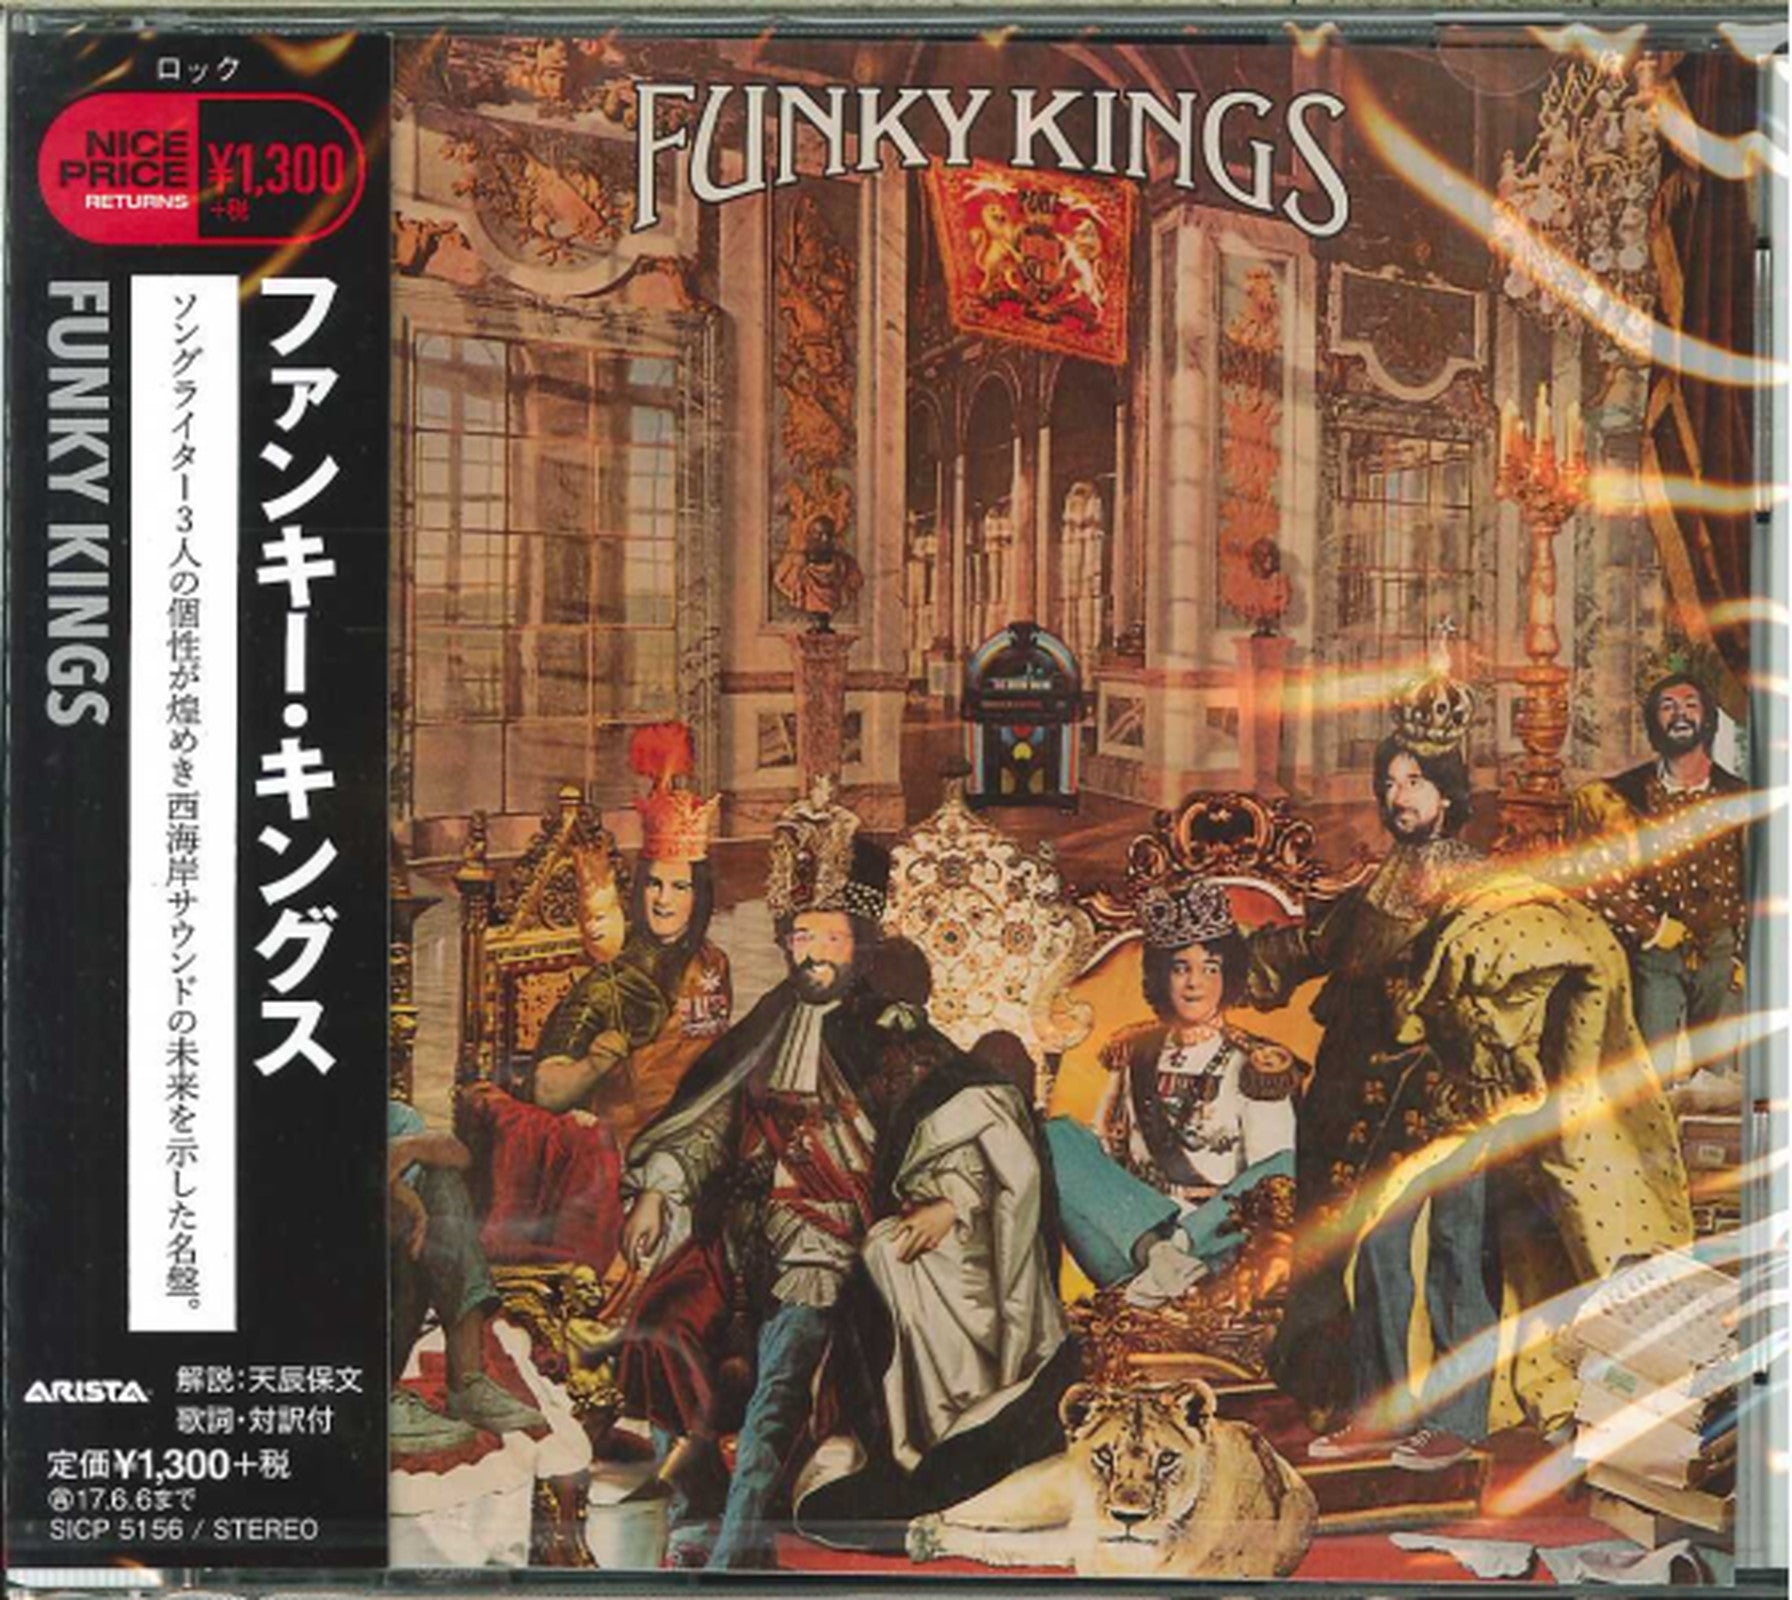 Funky Kings - S/T - Japan CD – CDs Vinyl Japan Store CD, Funk